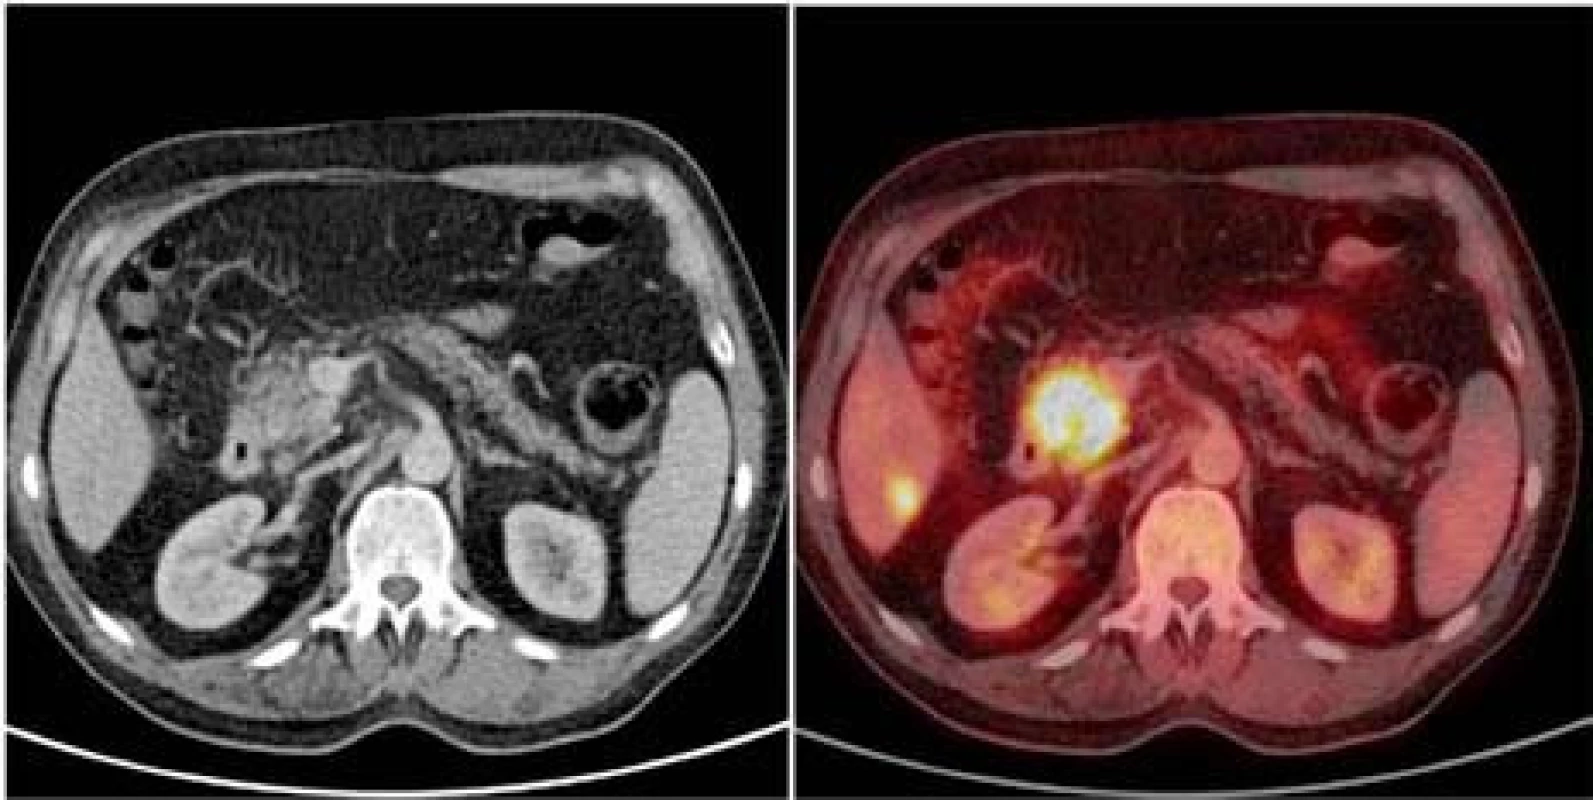 Axiální projekce hlavy pankreatu na CT vyšetření po podání kontrastní látky nitrožilně (vlevo), fúze téhož obrazu s &lt;sup&gt;18&lt;/sup&gt;FDG-PET vyšetřením (vpravo). Karcinom hlavy pankreatu o průměru více než 2 cm, drobná metastáza v 6. segmentu pravého laloku jater. Rozsah choroby nelze na CT spolehlivě rozlišit.
Fig. 1. Axial projection of head of pancreas on CT scan after IV administration of contrast agent (left), fusion of the same image with &lt;sup&gt;18&lt;/sup&gt;FDG-PET scan (right). Carcinoma of head of pancreas with the diameter of over 2 cm, small metastasis  in the sixth segment of the right hepatic lobe. The extent of the disease cannot be reliably distinguished on CT scan.